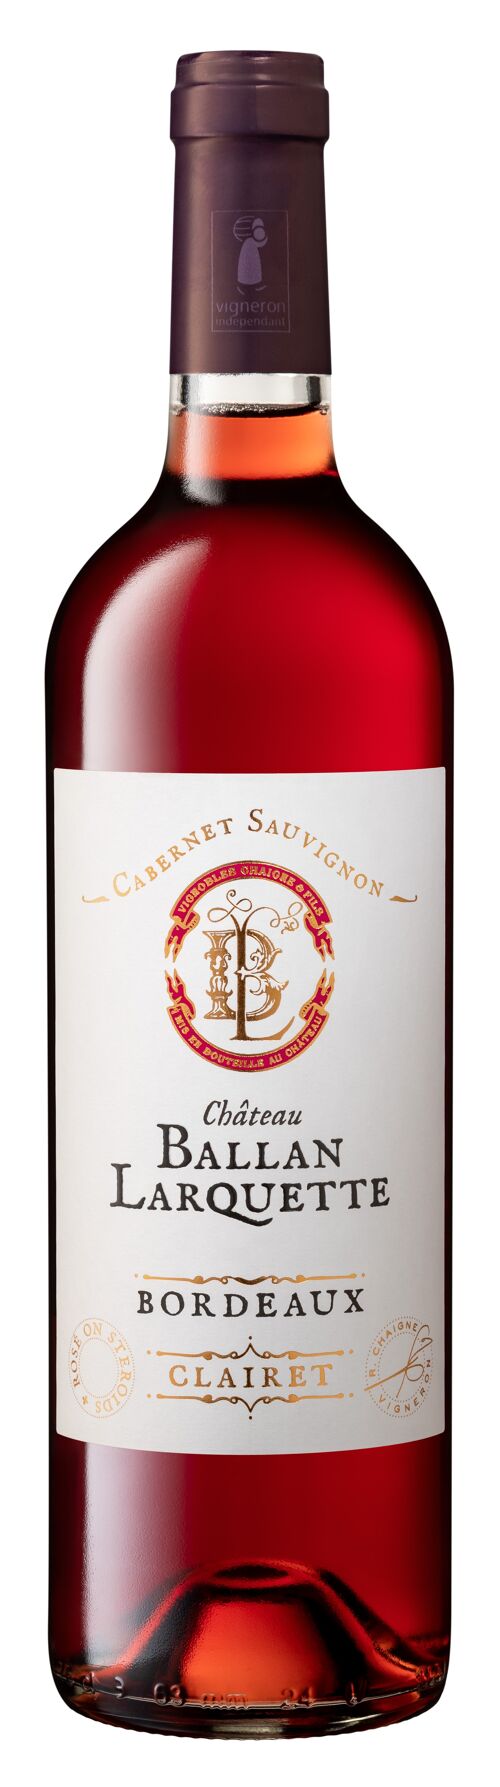 Château Ballan-Larquette 2020 Bordeaux Clairet AOC 750 ml - Conversion bio